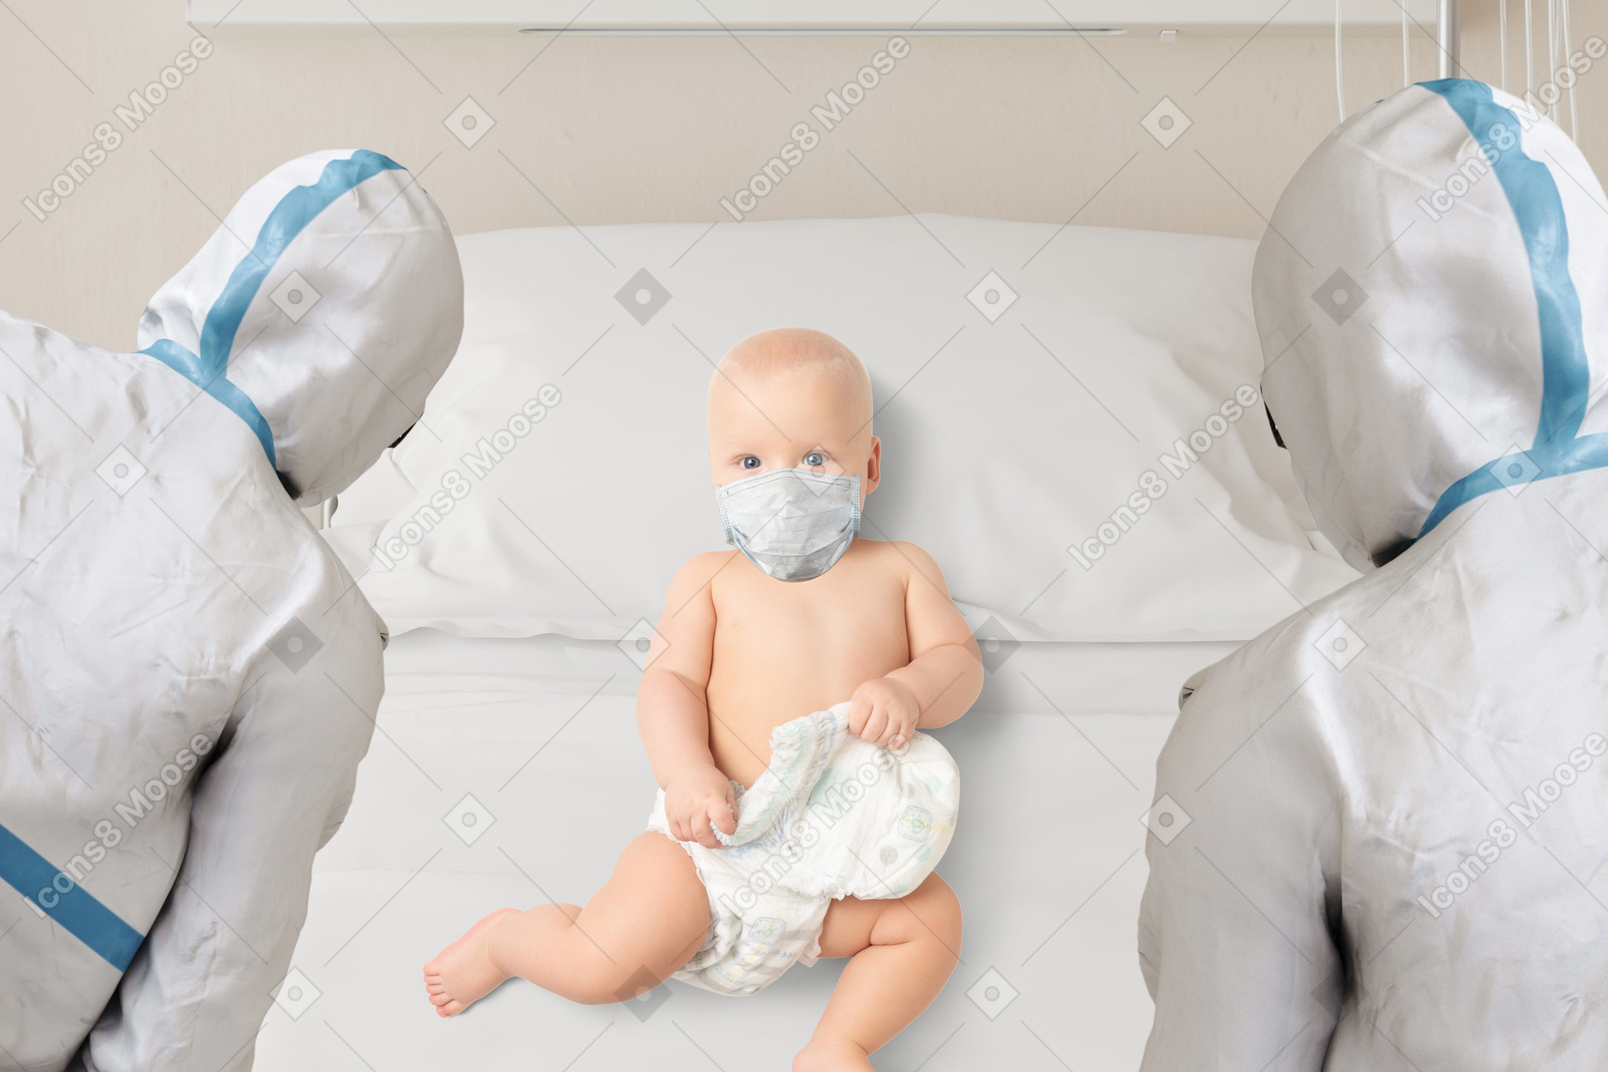 Baby liegt auf dem krankenhausbett, umgeben von ärzten in schutzausrüstung